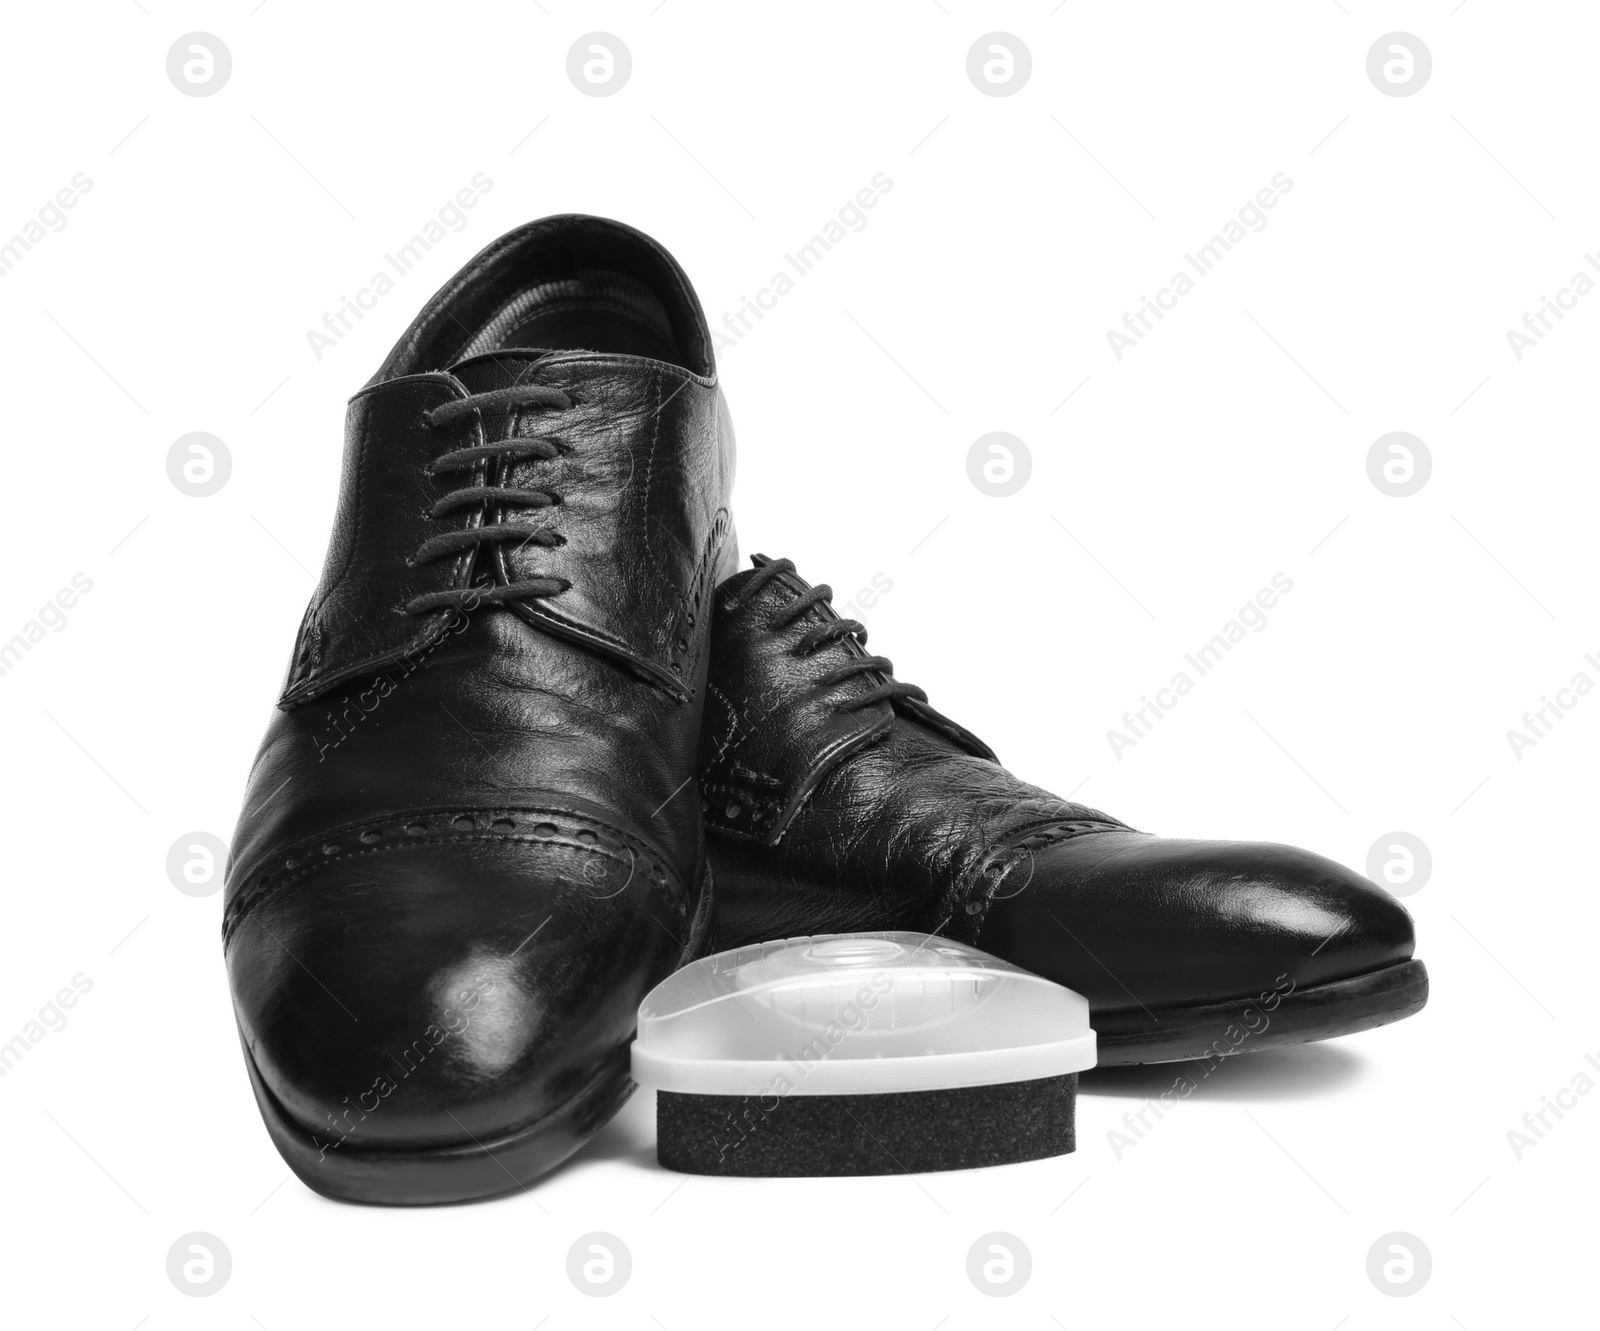 Photo of Stylish men's shoes and polishing sponge on white background